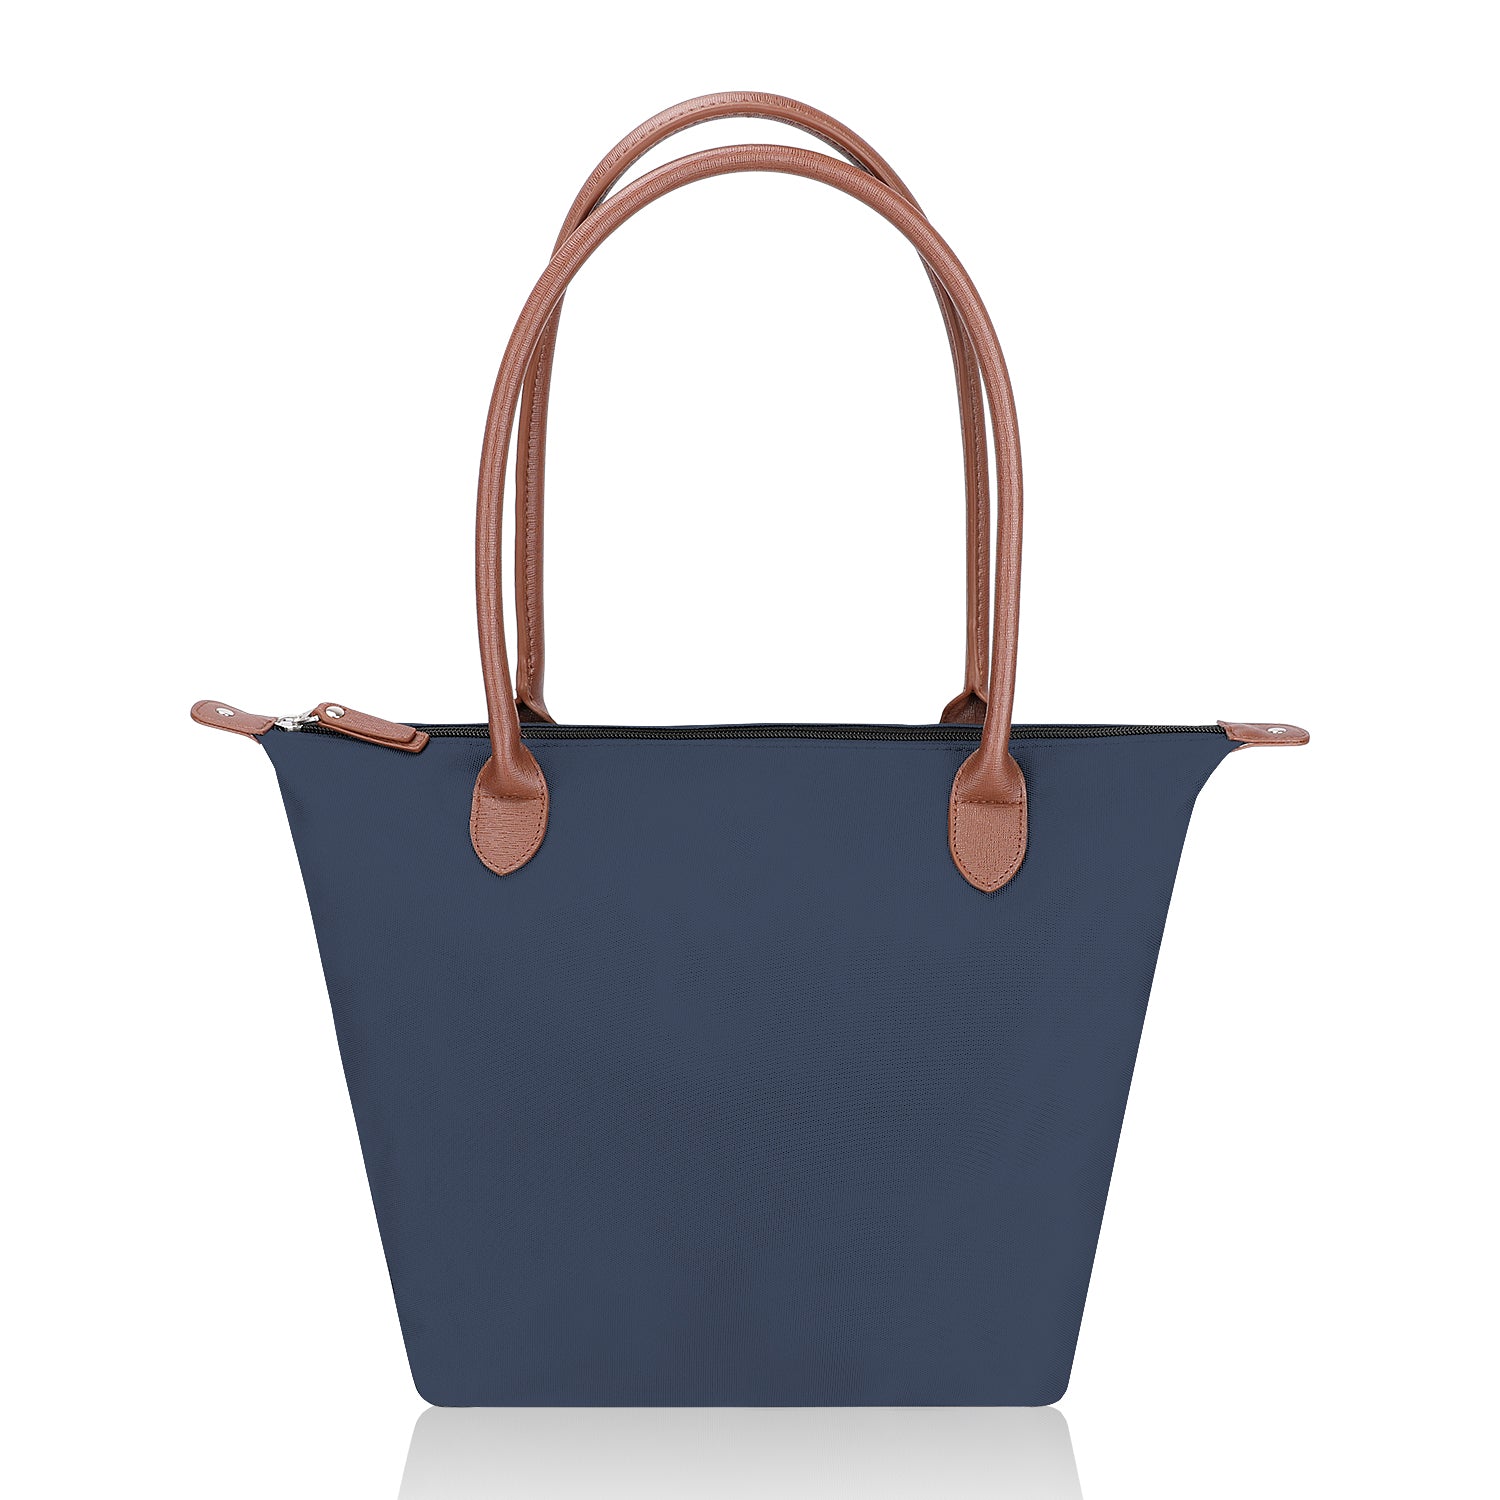 Buy Bellina Women's in Premium Shoulder Handbag - Blue at Amazon.in